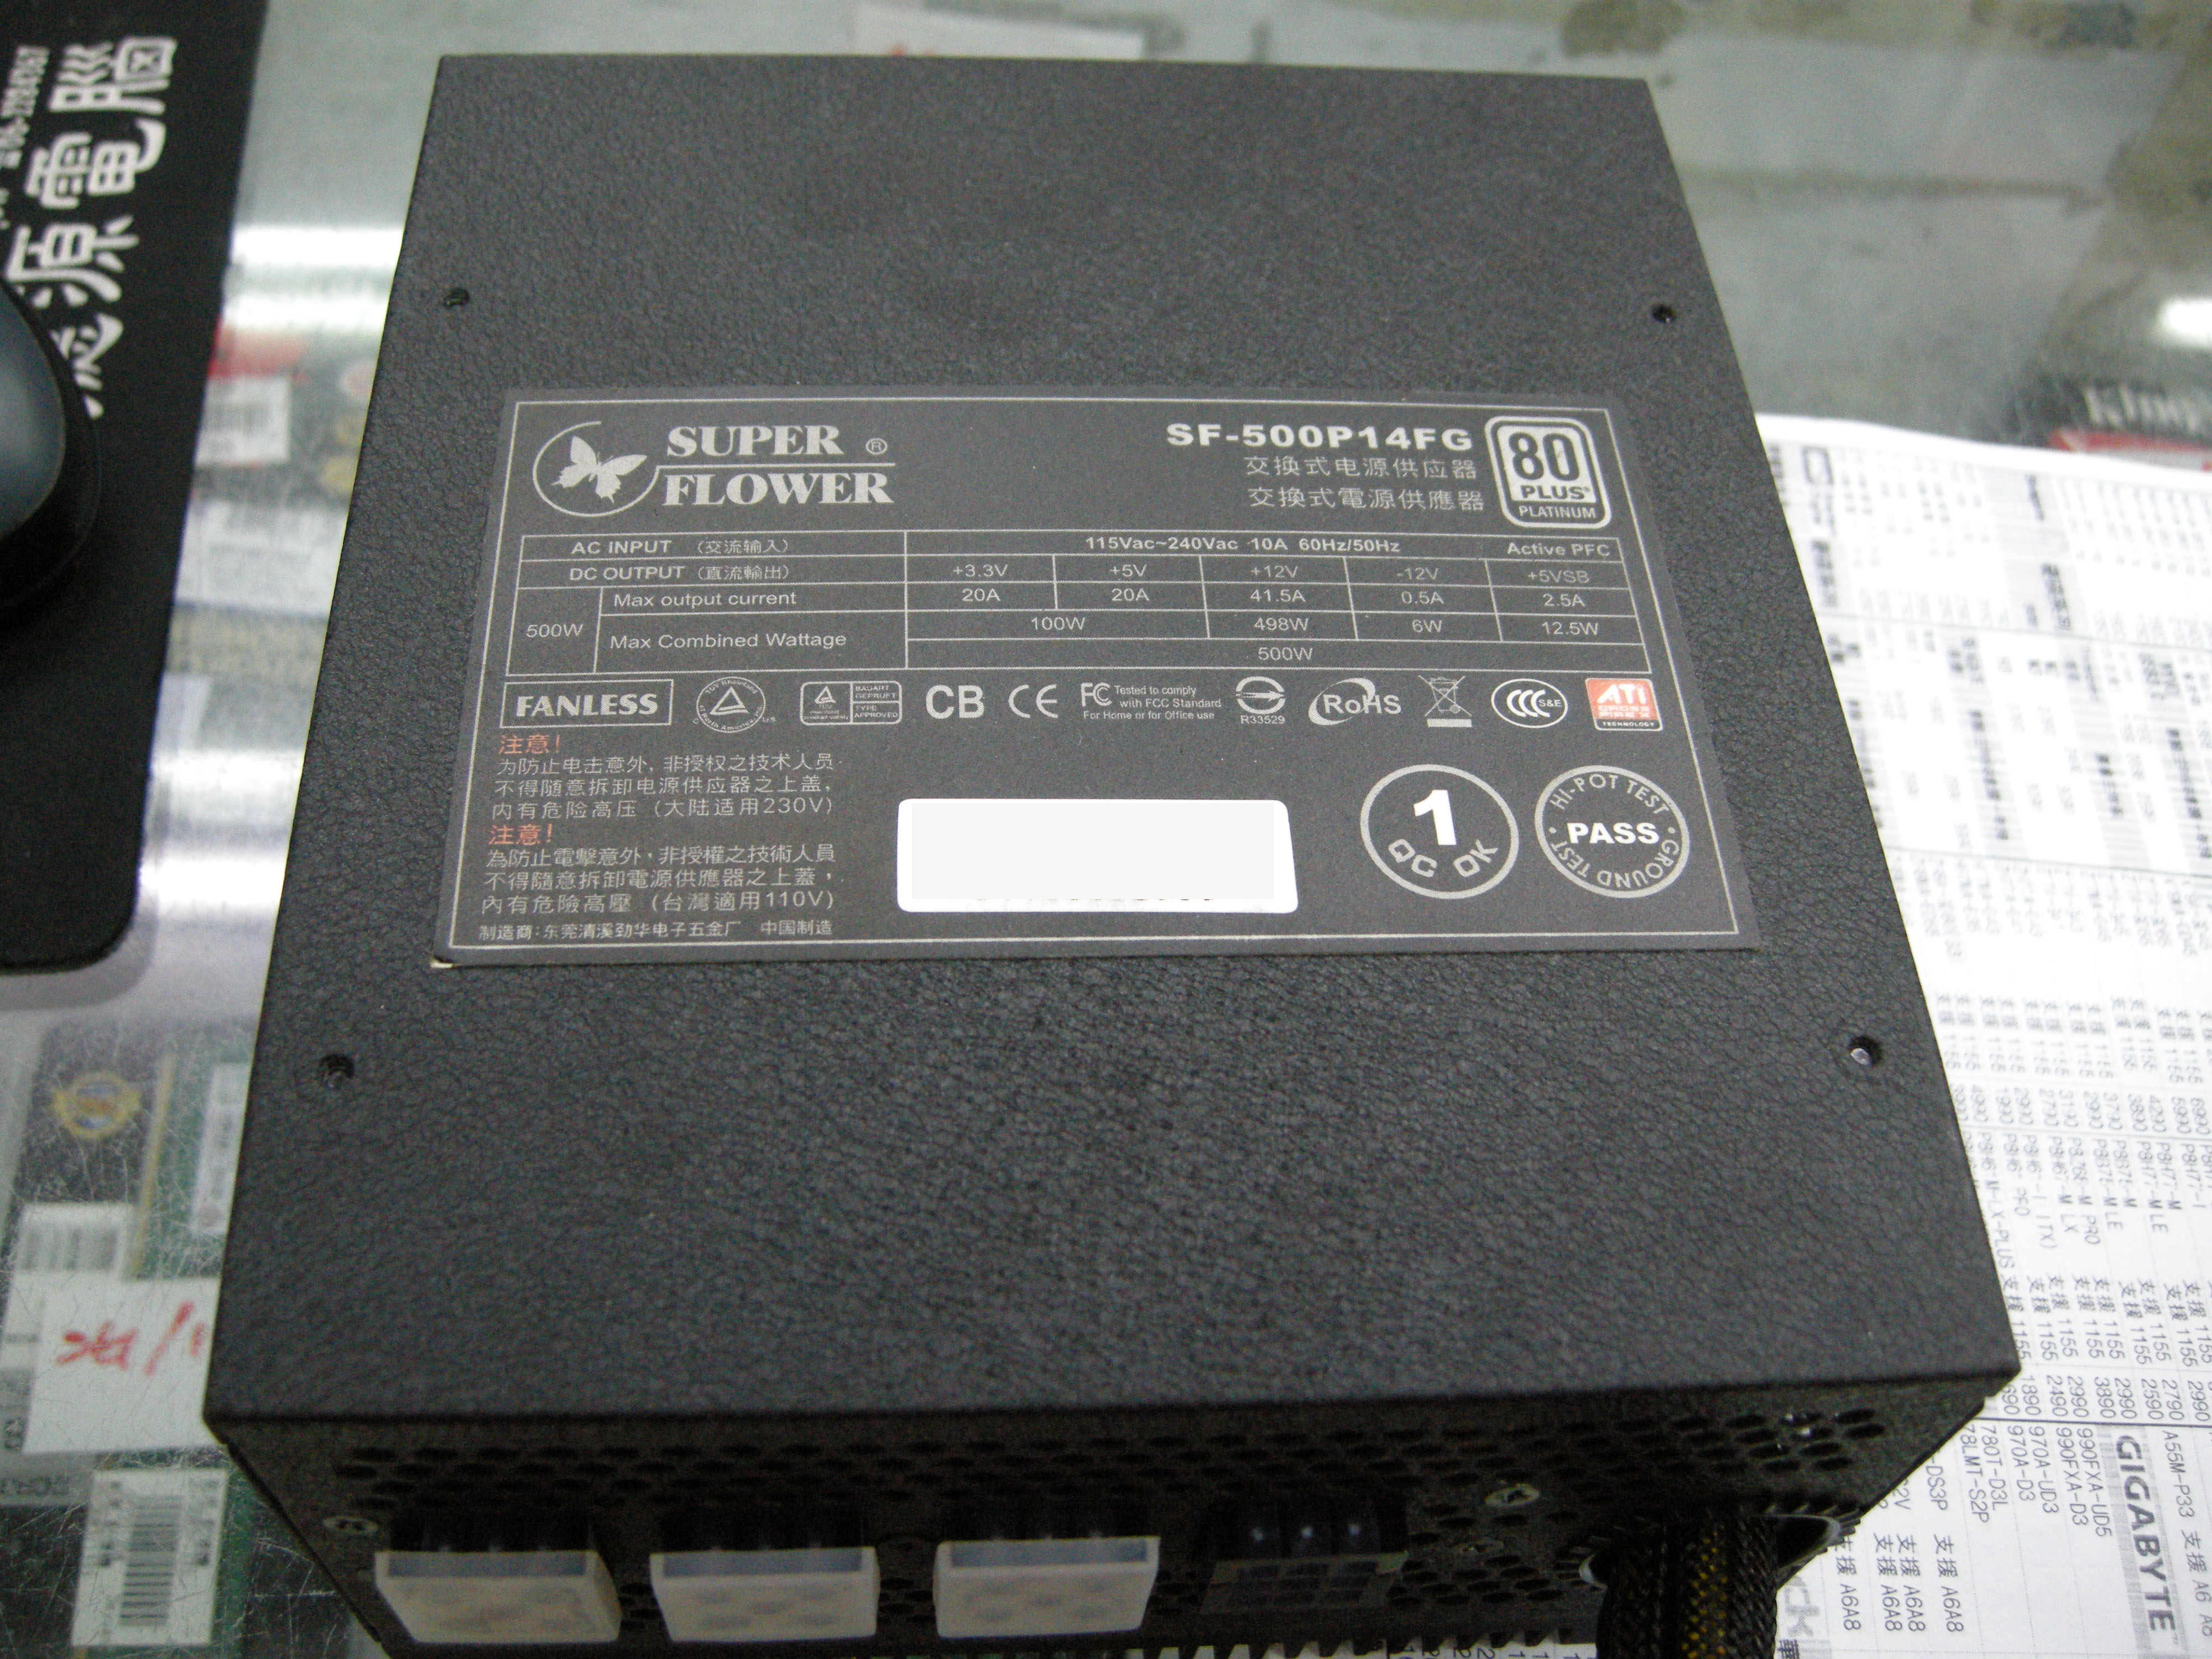 DSCN5221(2).JPG - 1.61 MB